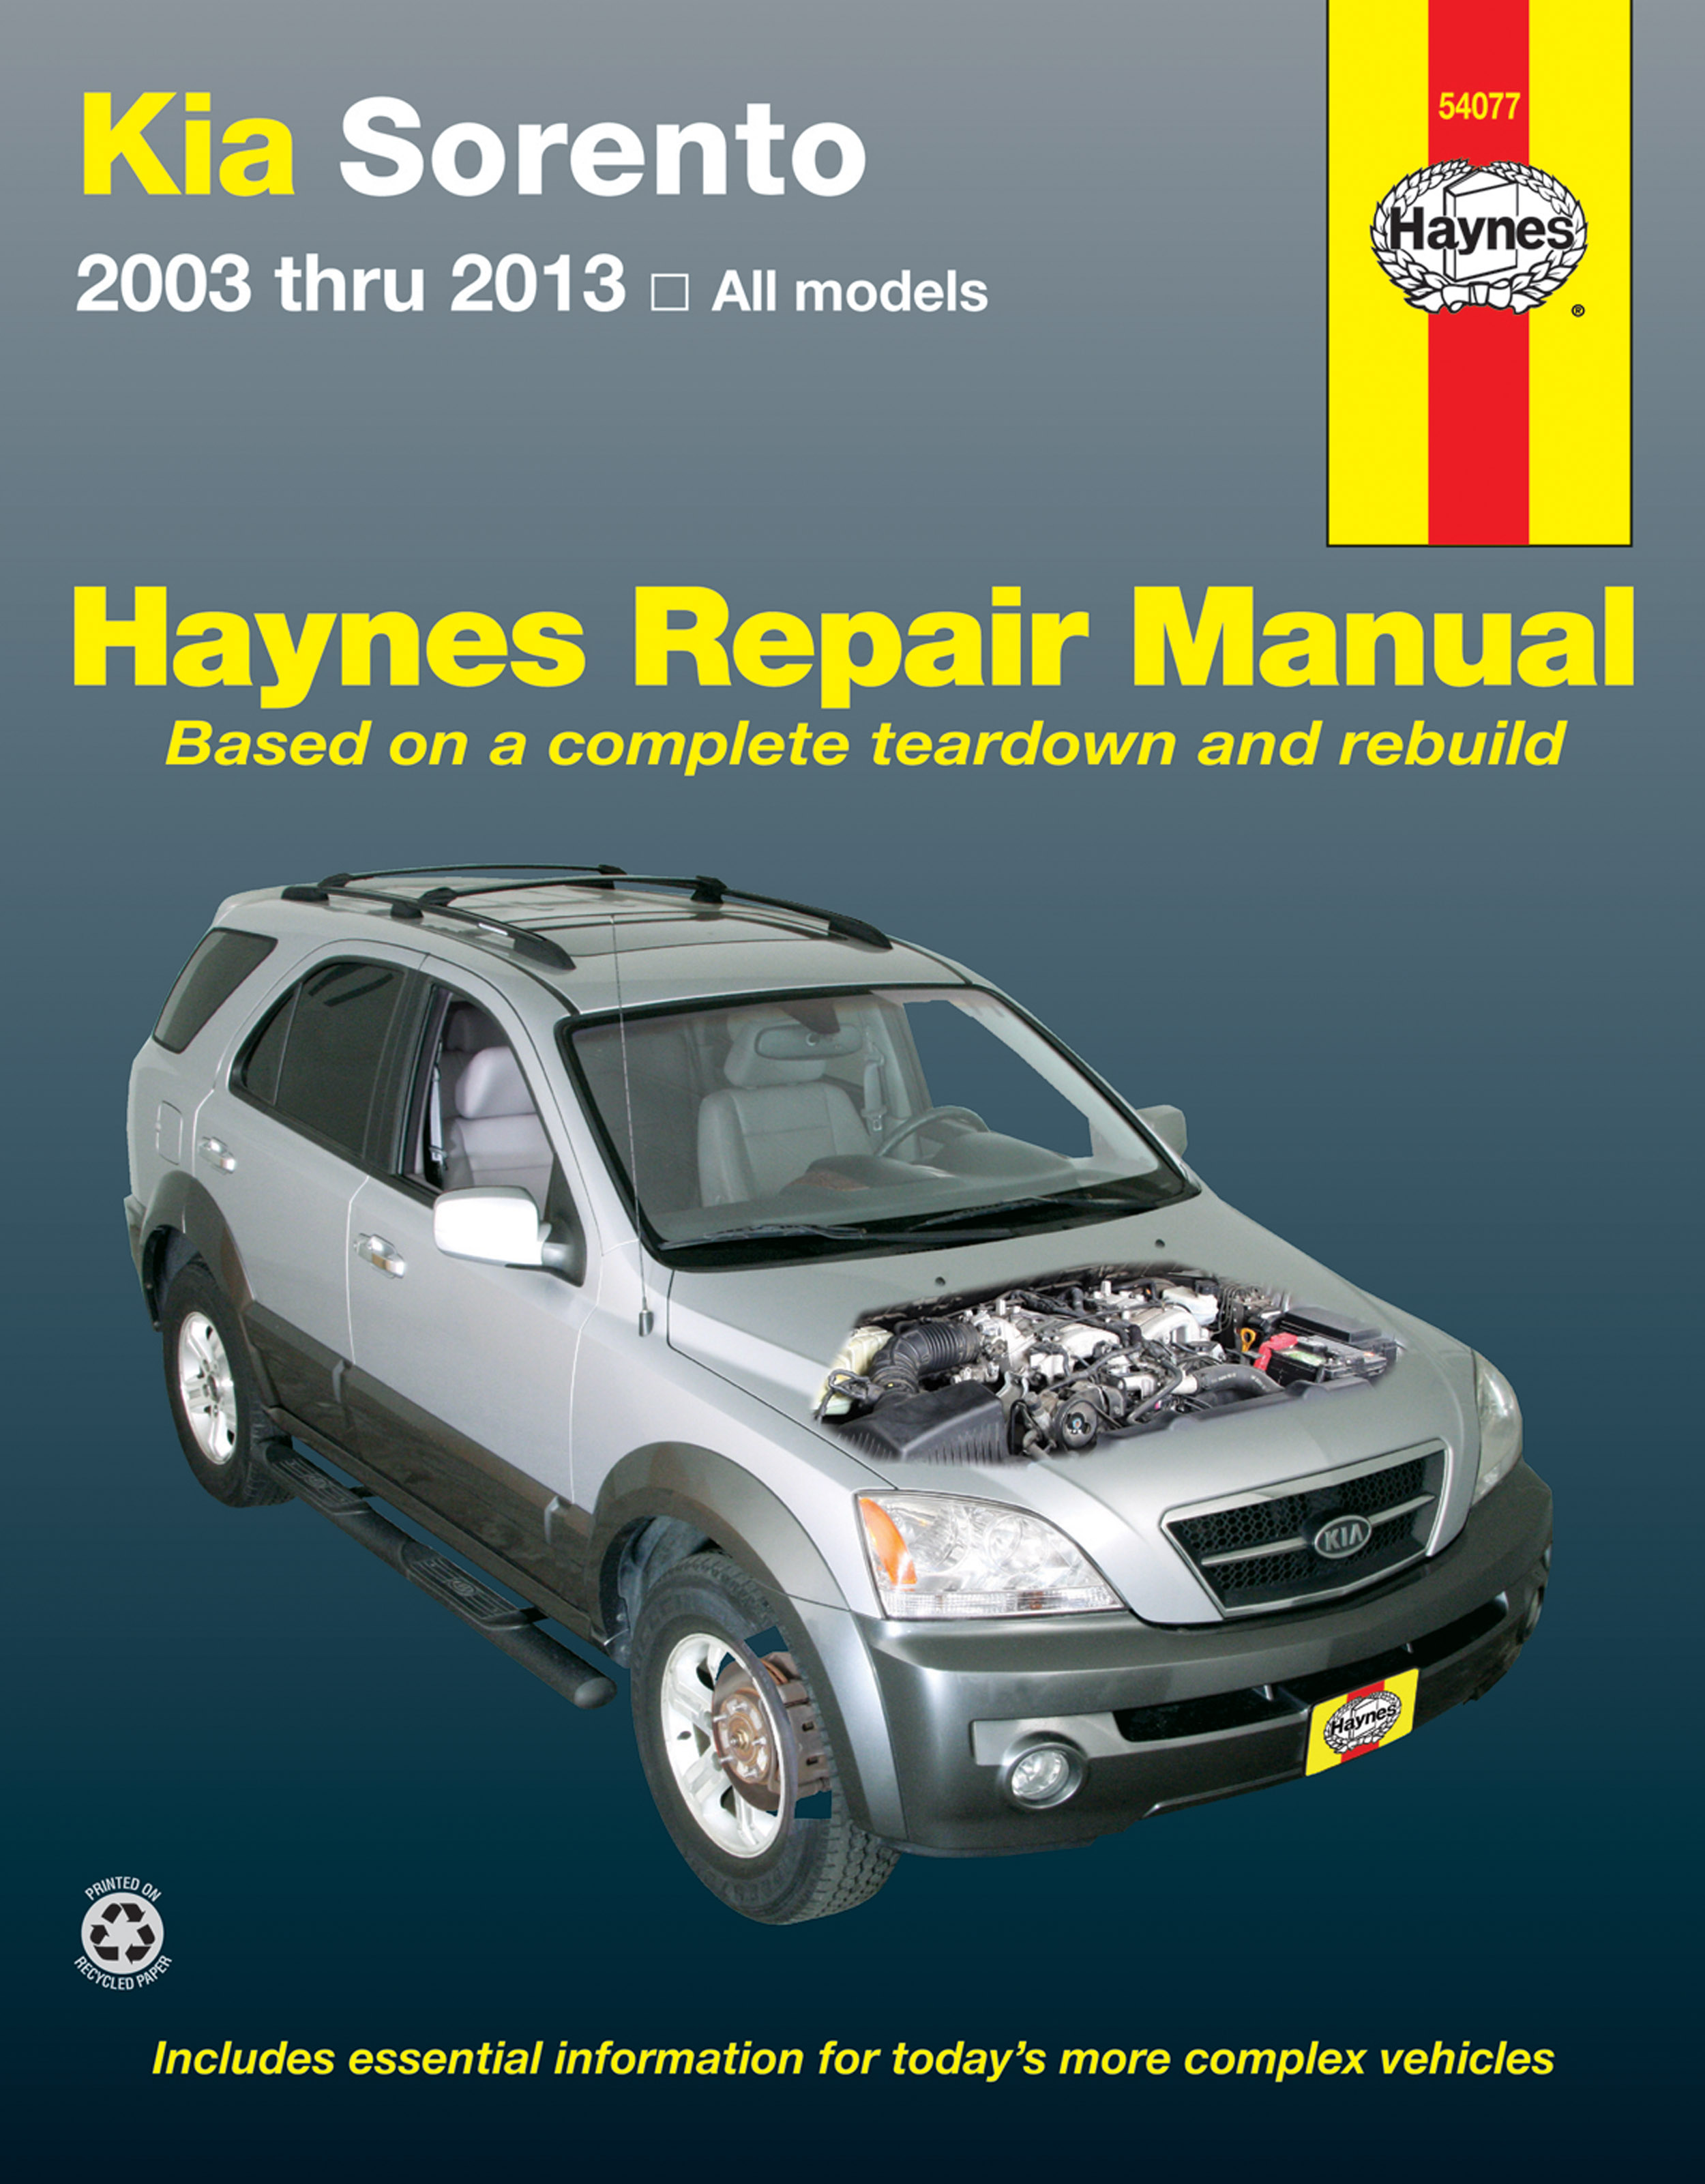 Haynes-54077-cover_0.jpg